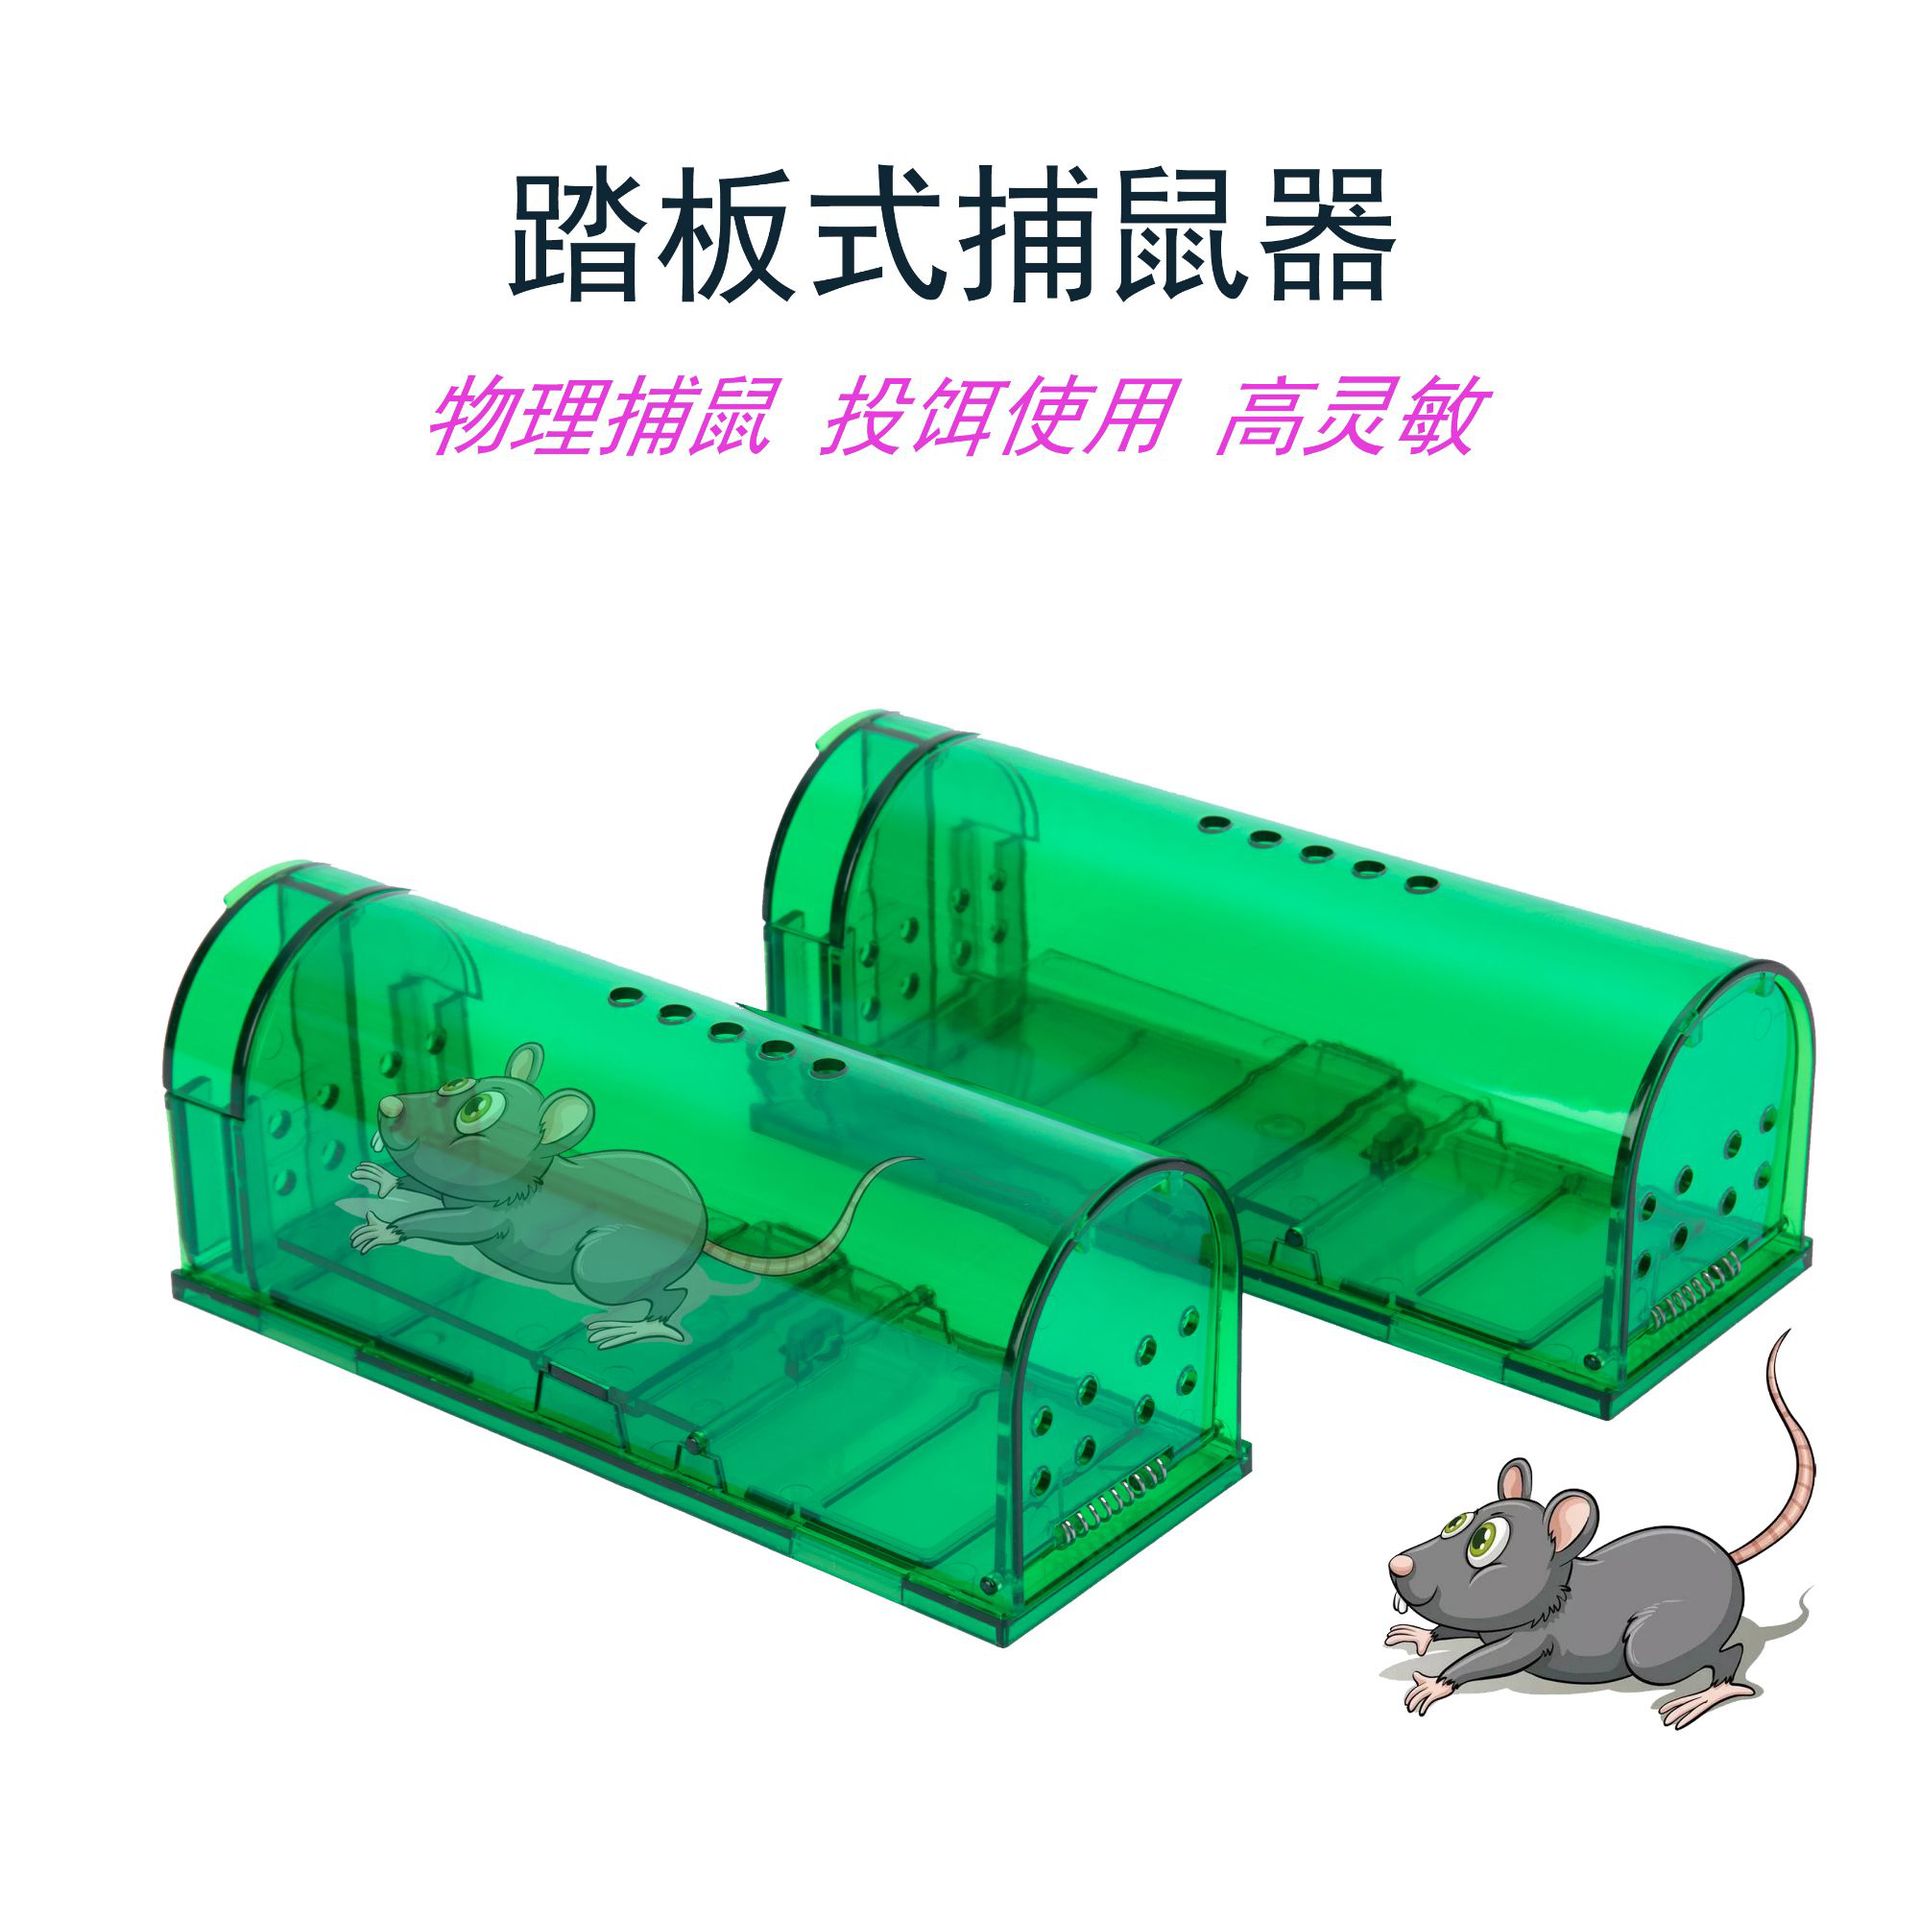 厂家批发亚马逊塑料捕鼠器老鼠笼境外电商粘鼠板胶爆款跨境捕鼠笼